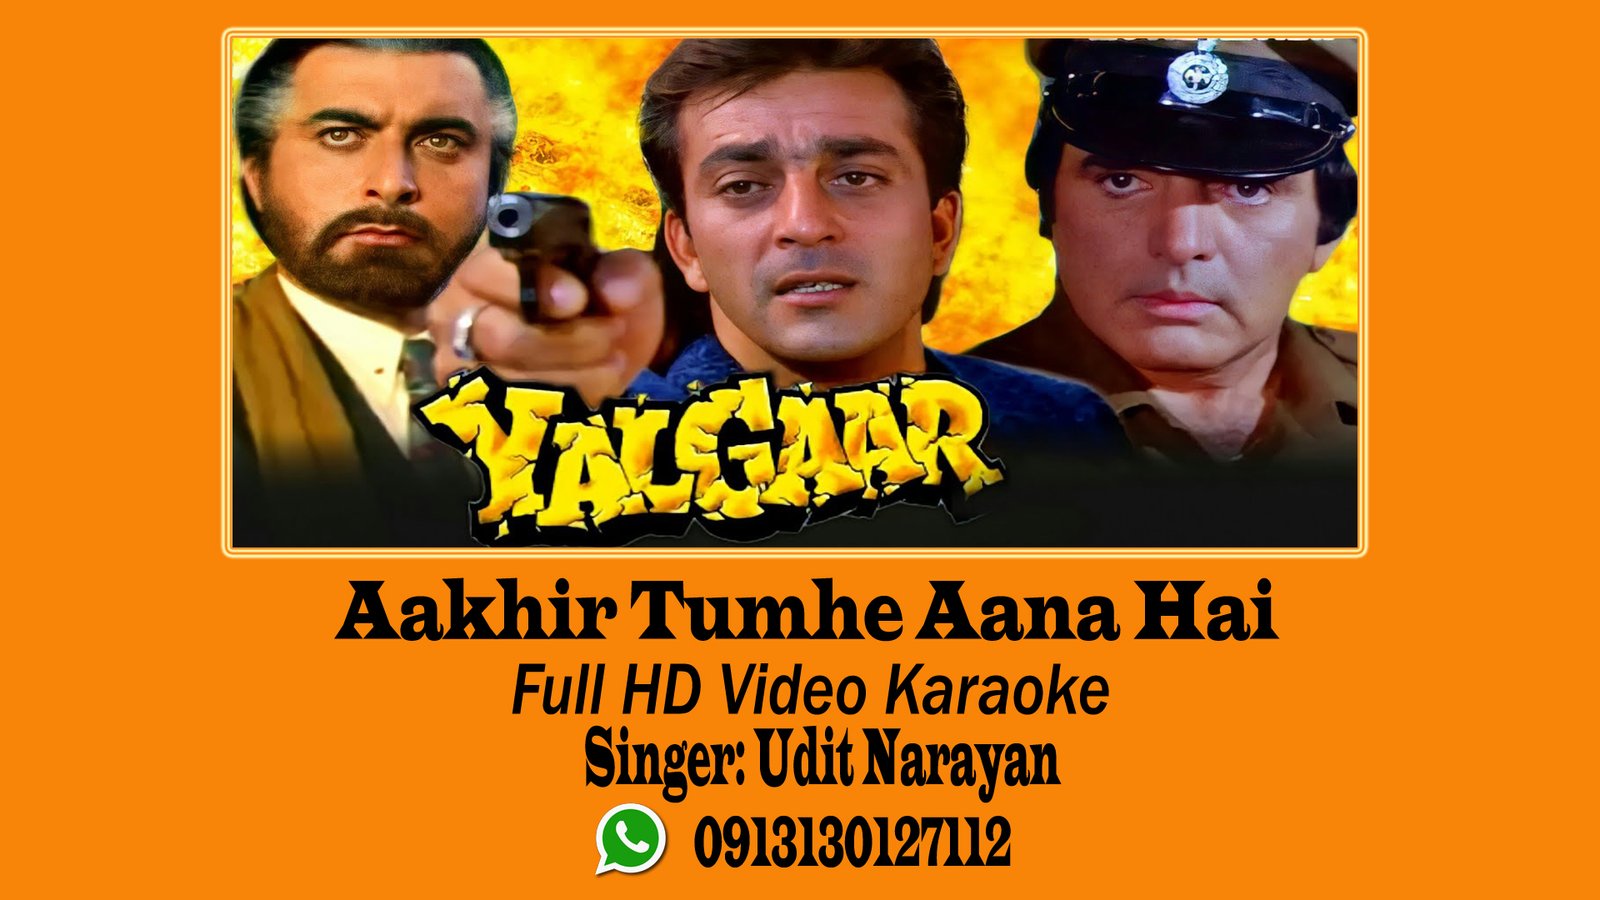 Aakhir Tumhein Aana hai Video Karaoke